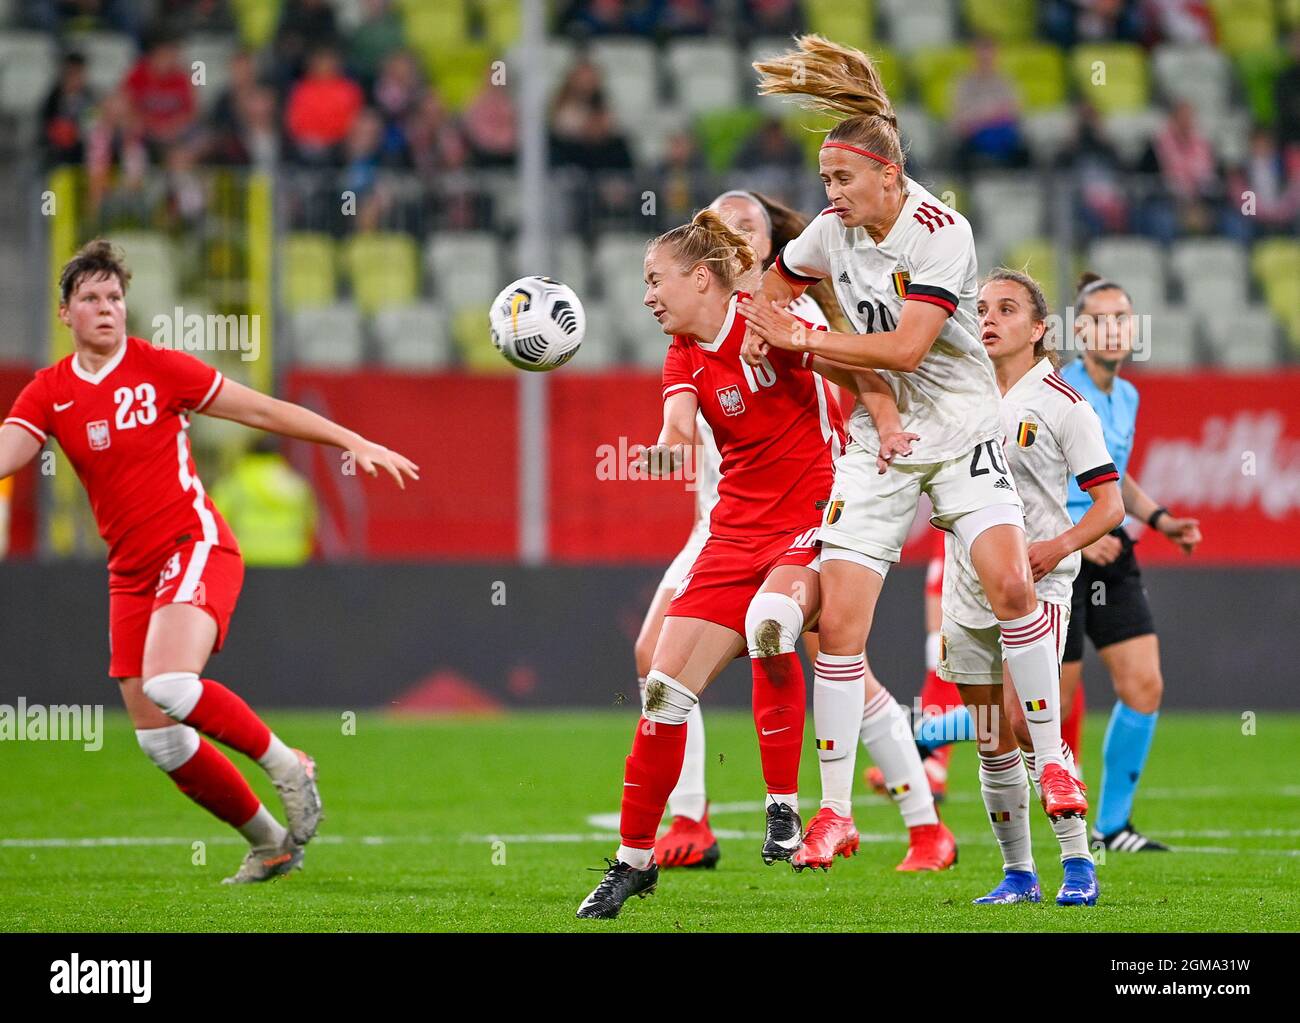 Die polnische Weronika Zawistowska und die belgische Julie Biesmans kämpfen während eines Fußballspiels zwischen der belgischen Nationalmannschaft The Red Flames und um den Ball Stockfoto